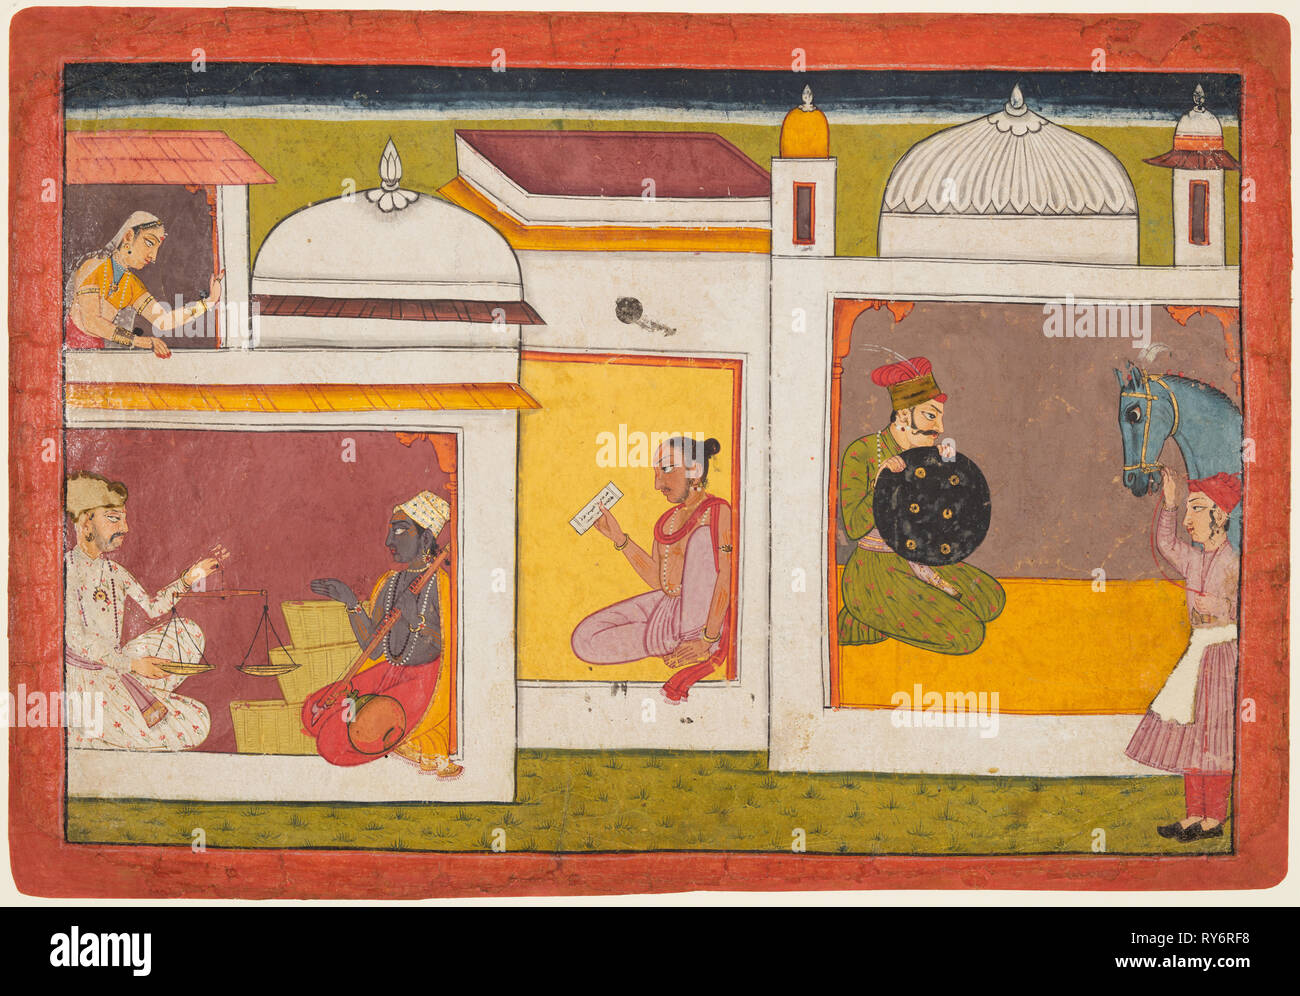 All'interno di un edificio, Madhava si siede di fronte a un uomo con una scala da una Madhavanala Kamakandala, serie C. 1700. India, Bilaspur. Colore su carta; pagina: 21,6 x 31,4 cm (8 1/2 x 12 3/8 in Foto Stock